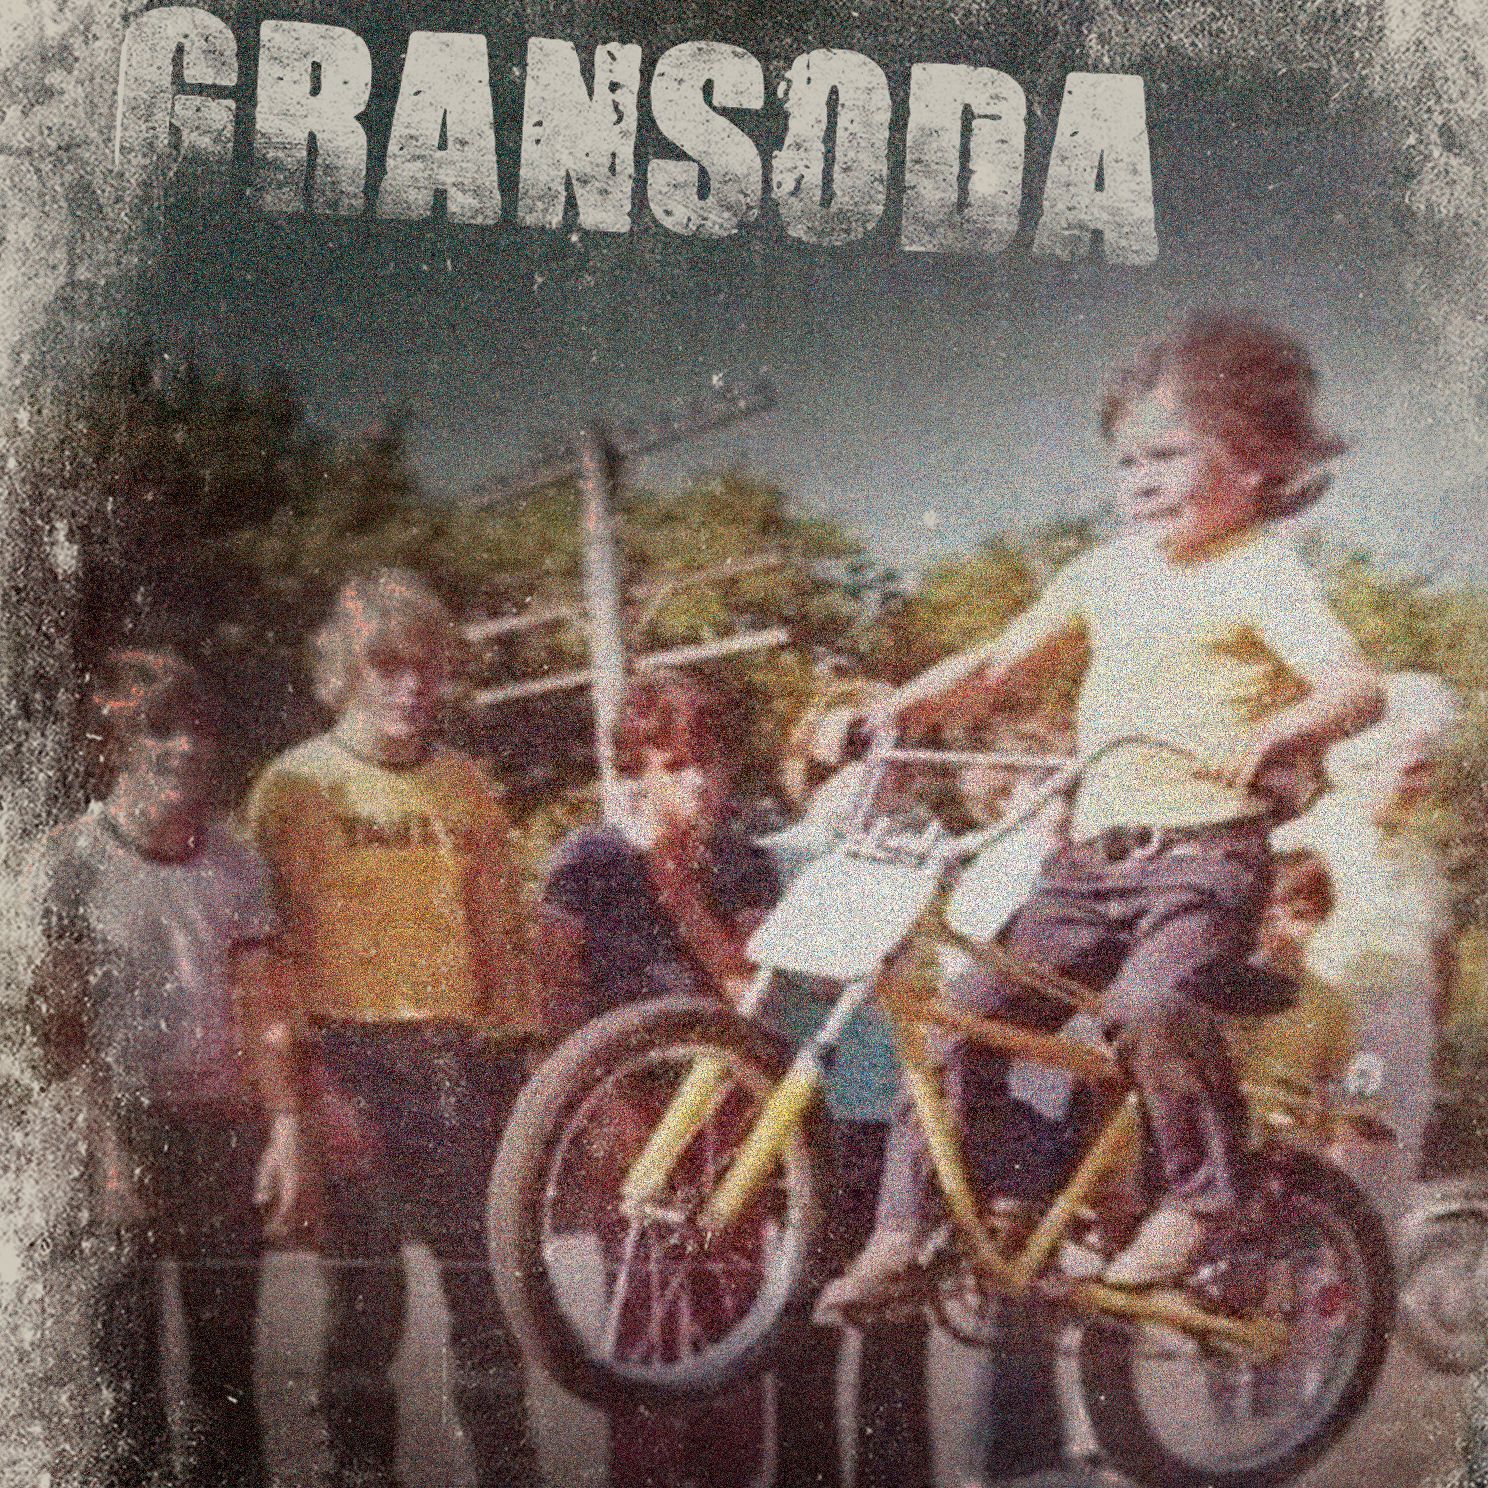 Gransoda debut ep artwork